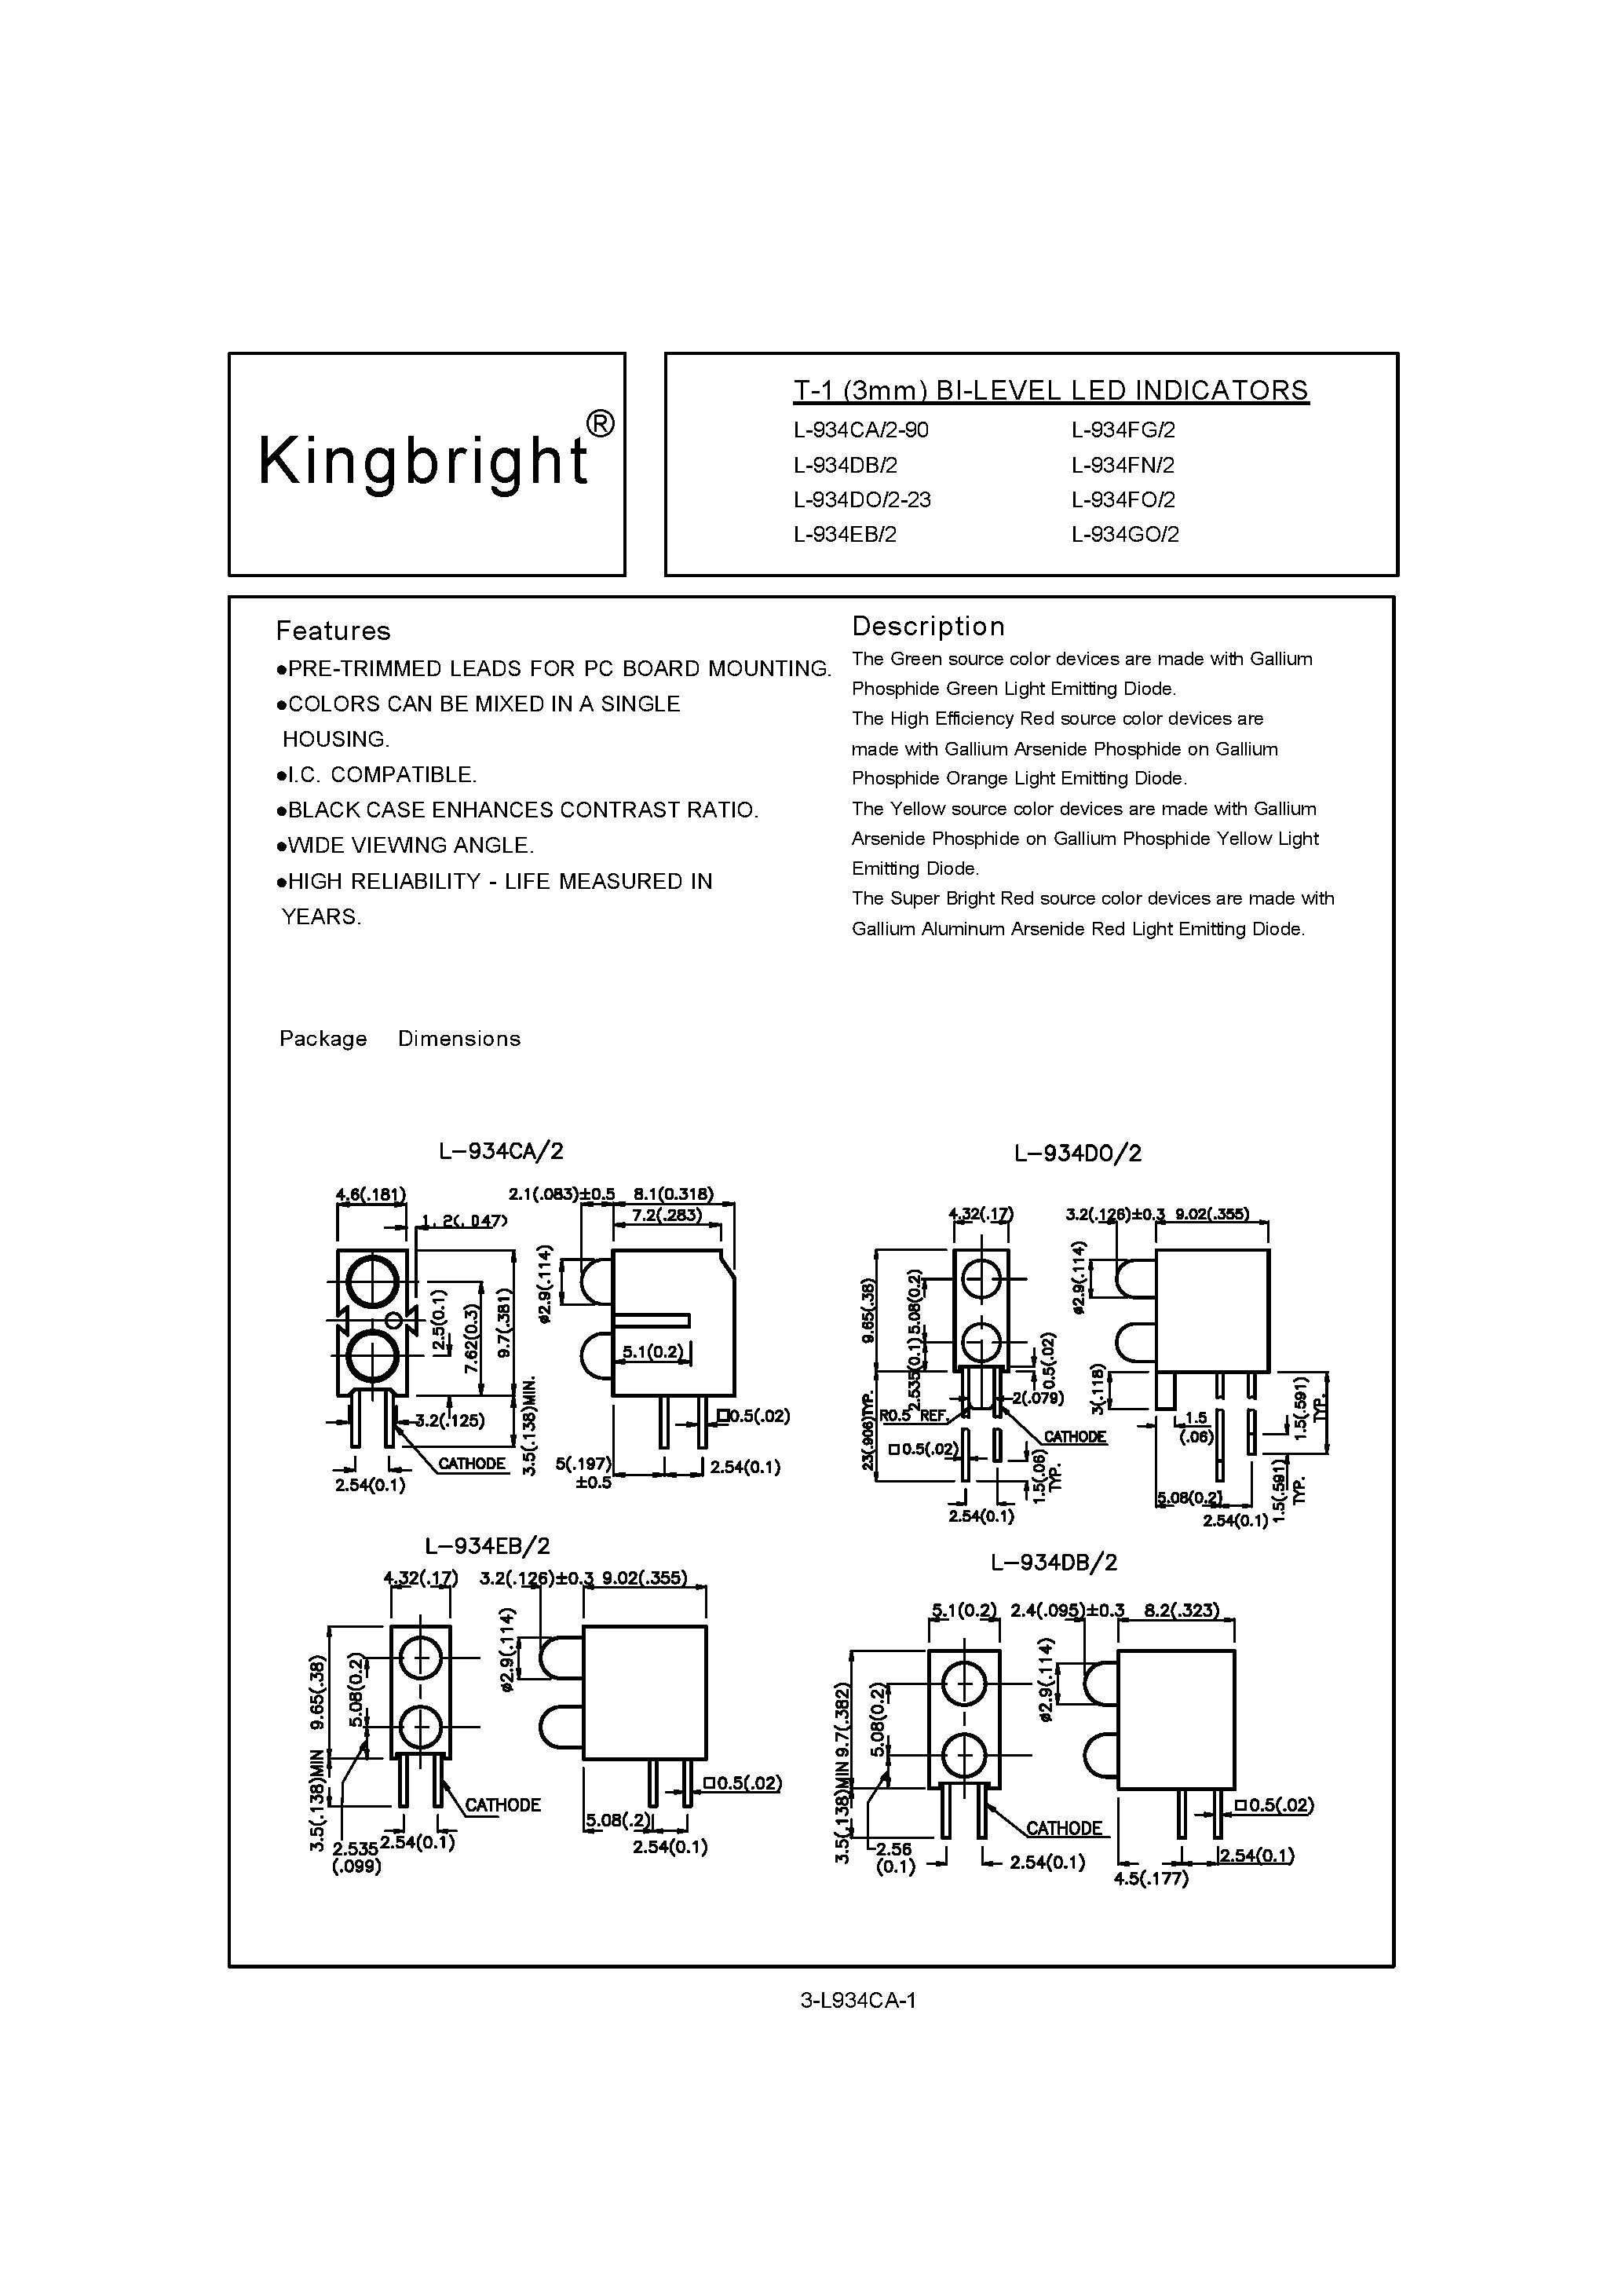 Даташит L-934 - T-1 Bi-Level LED Indicators страница 1